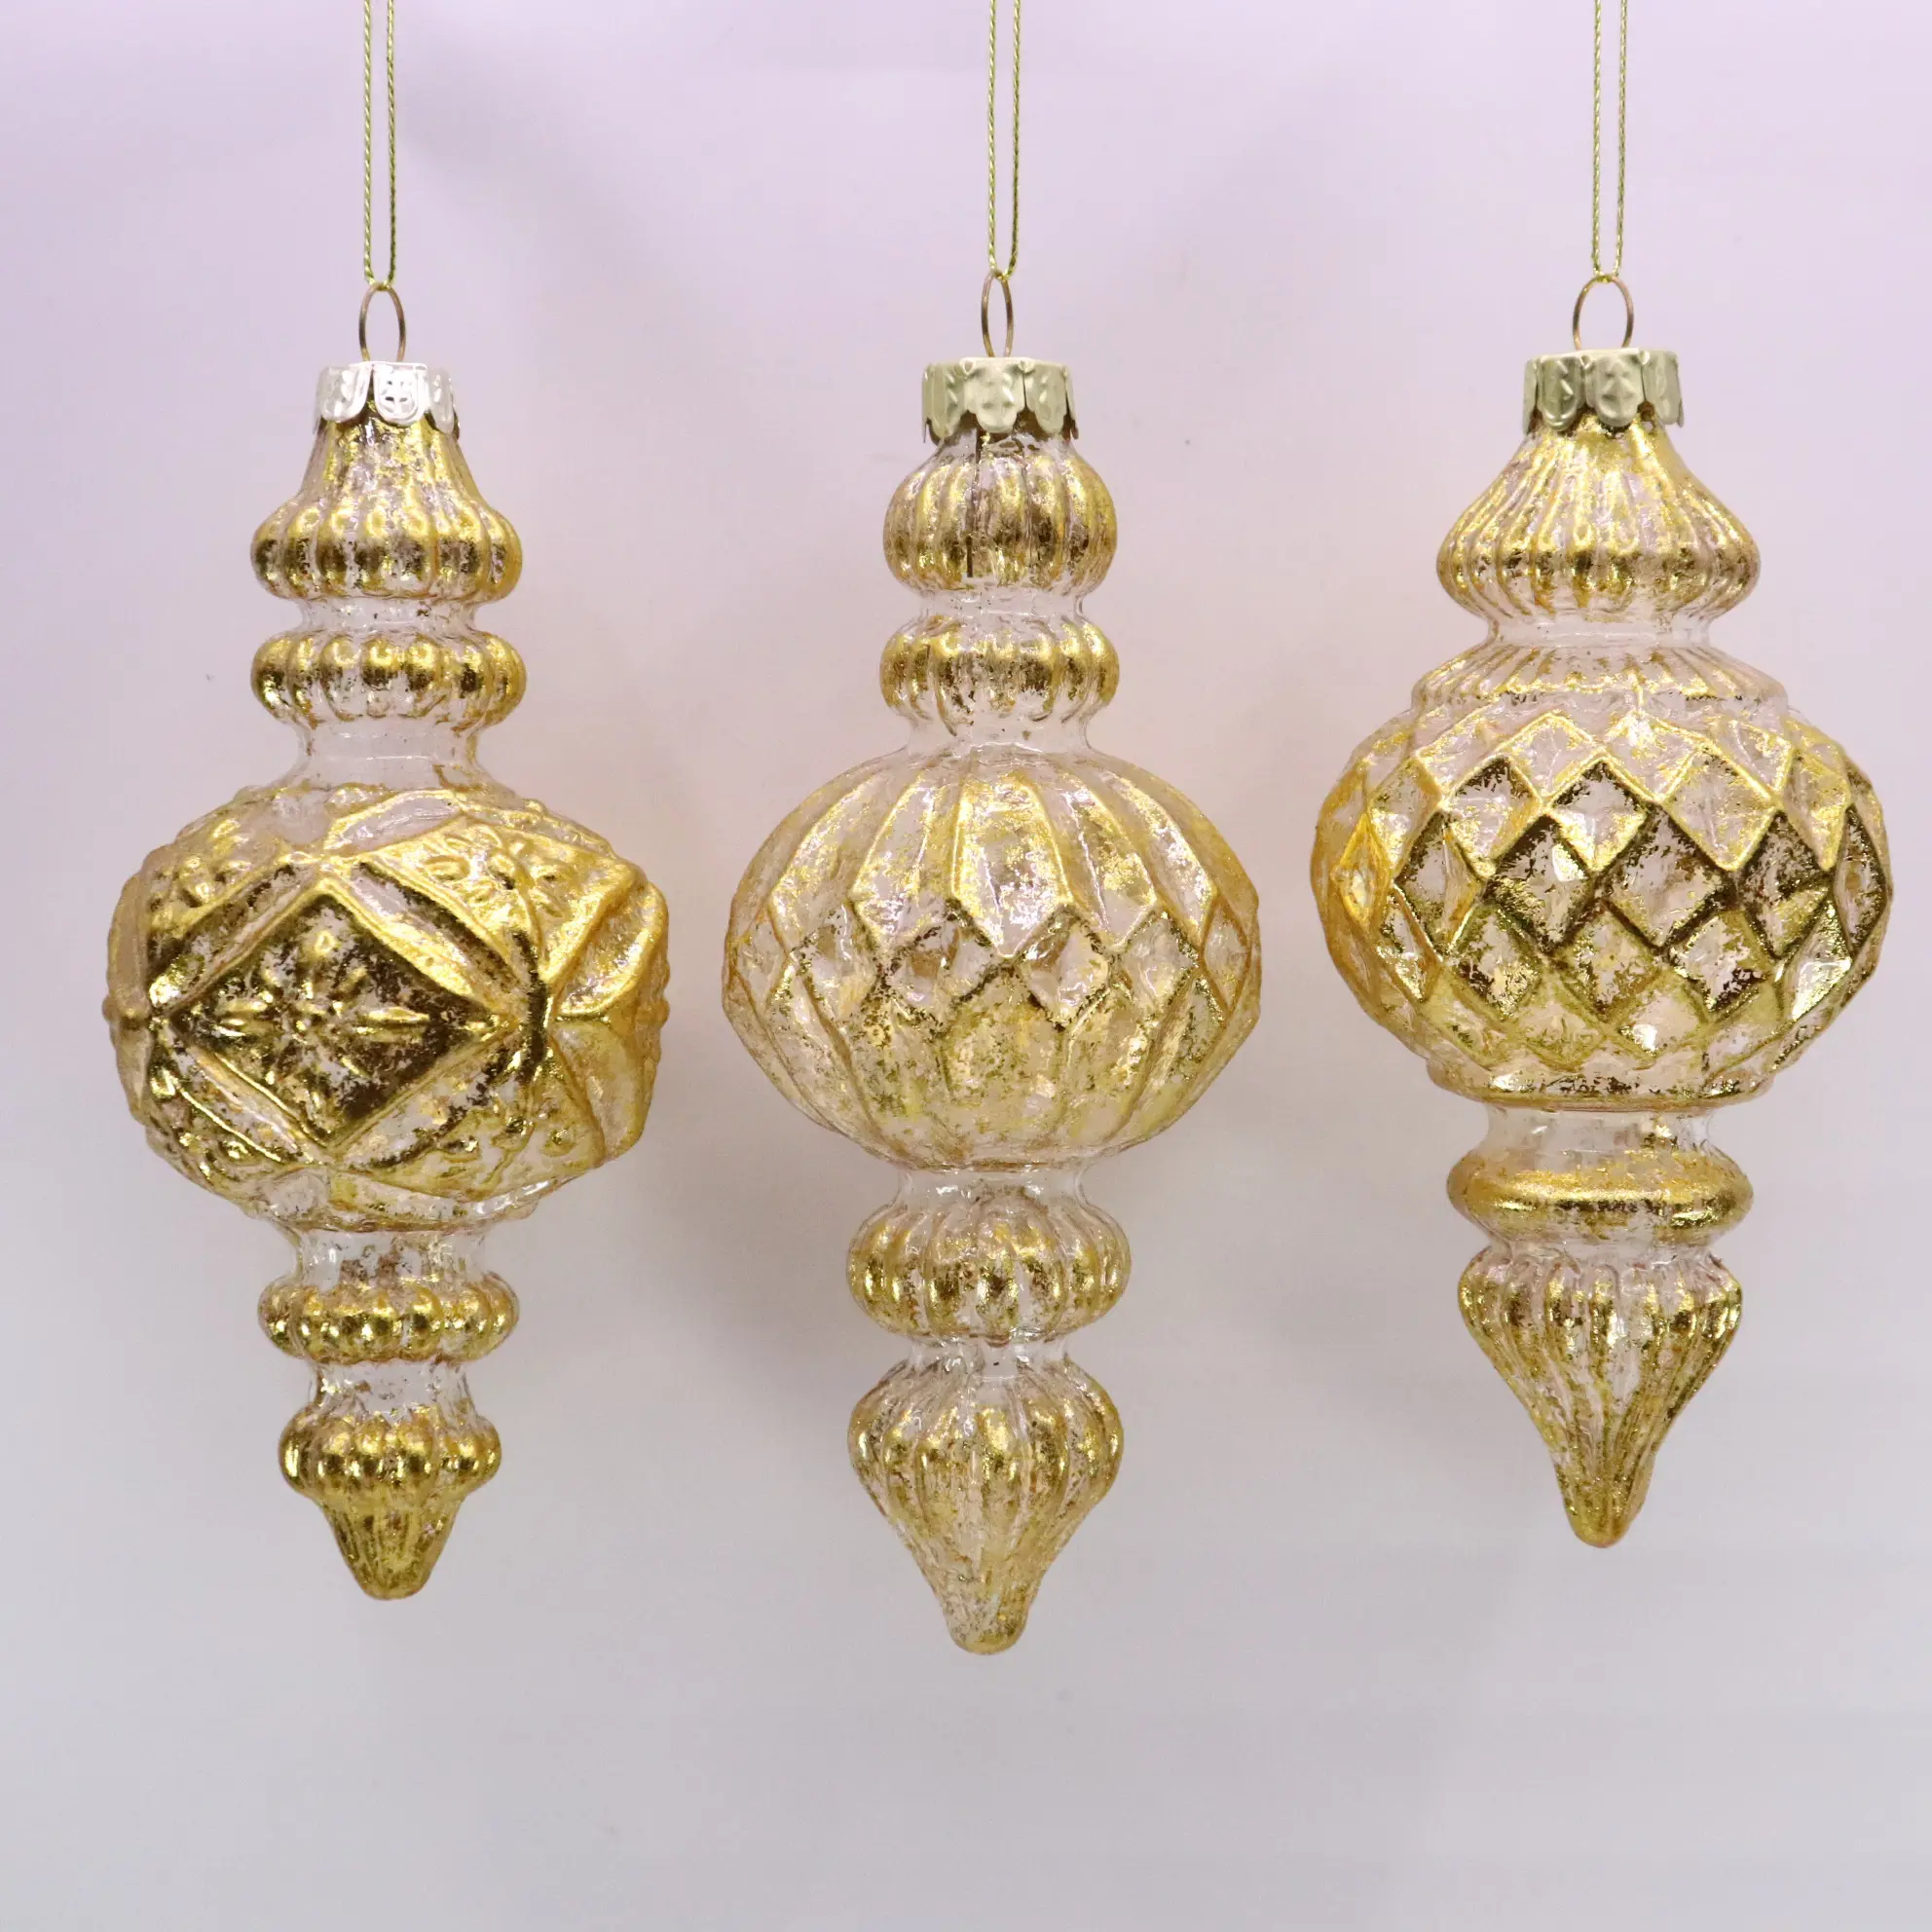 Ornamen kaca emas mengkilap, dekorasi rumah warna-warni dapat disesuaikan ornamen berlian es ornamen kaca Natal